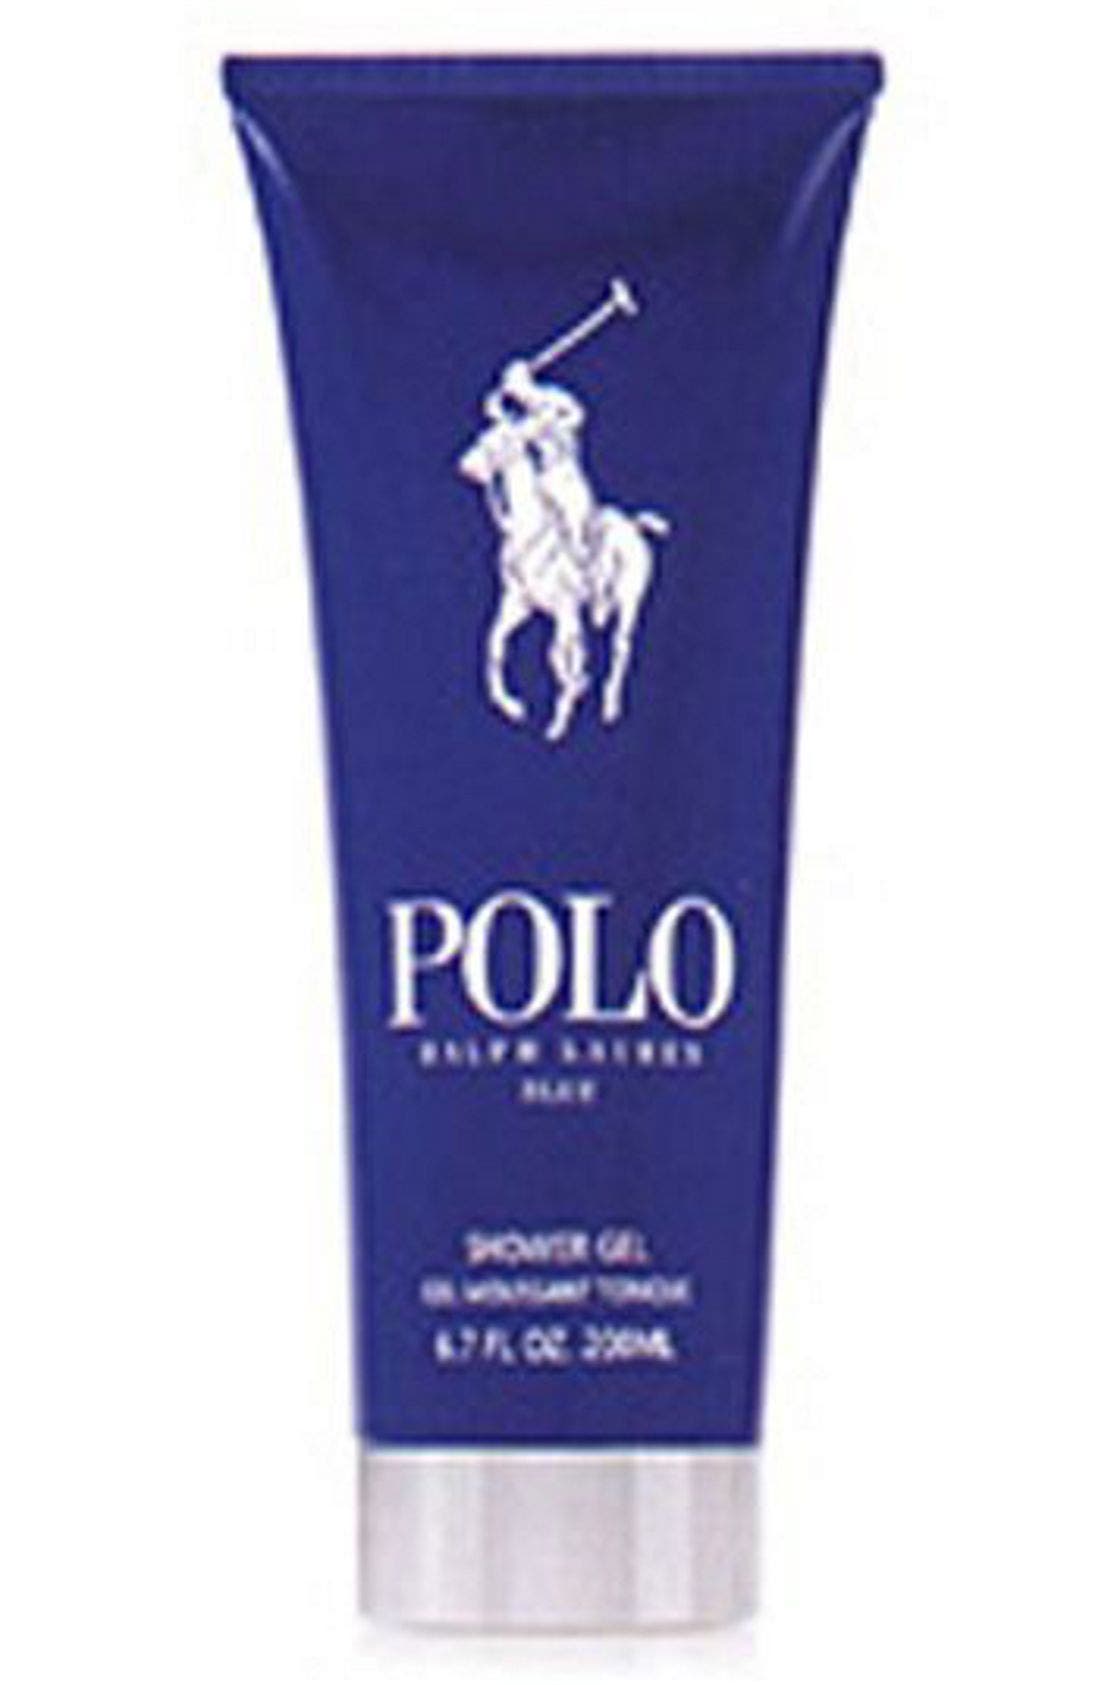 polo blue body wash